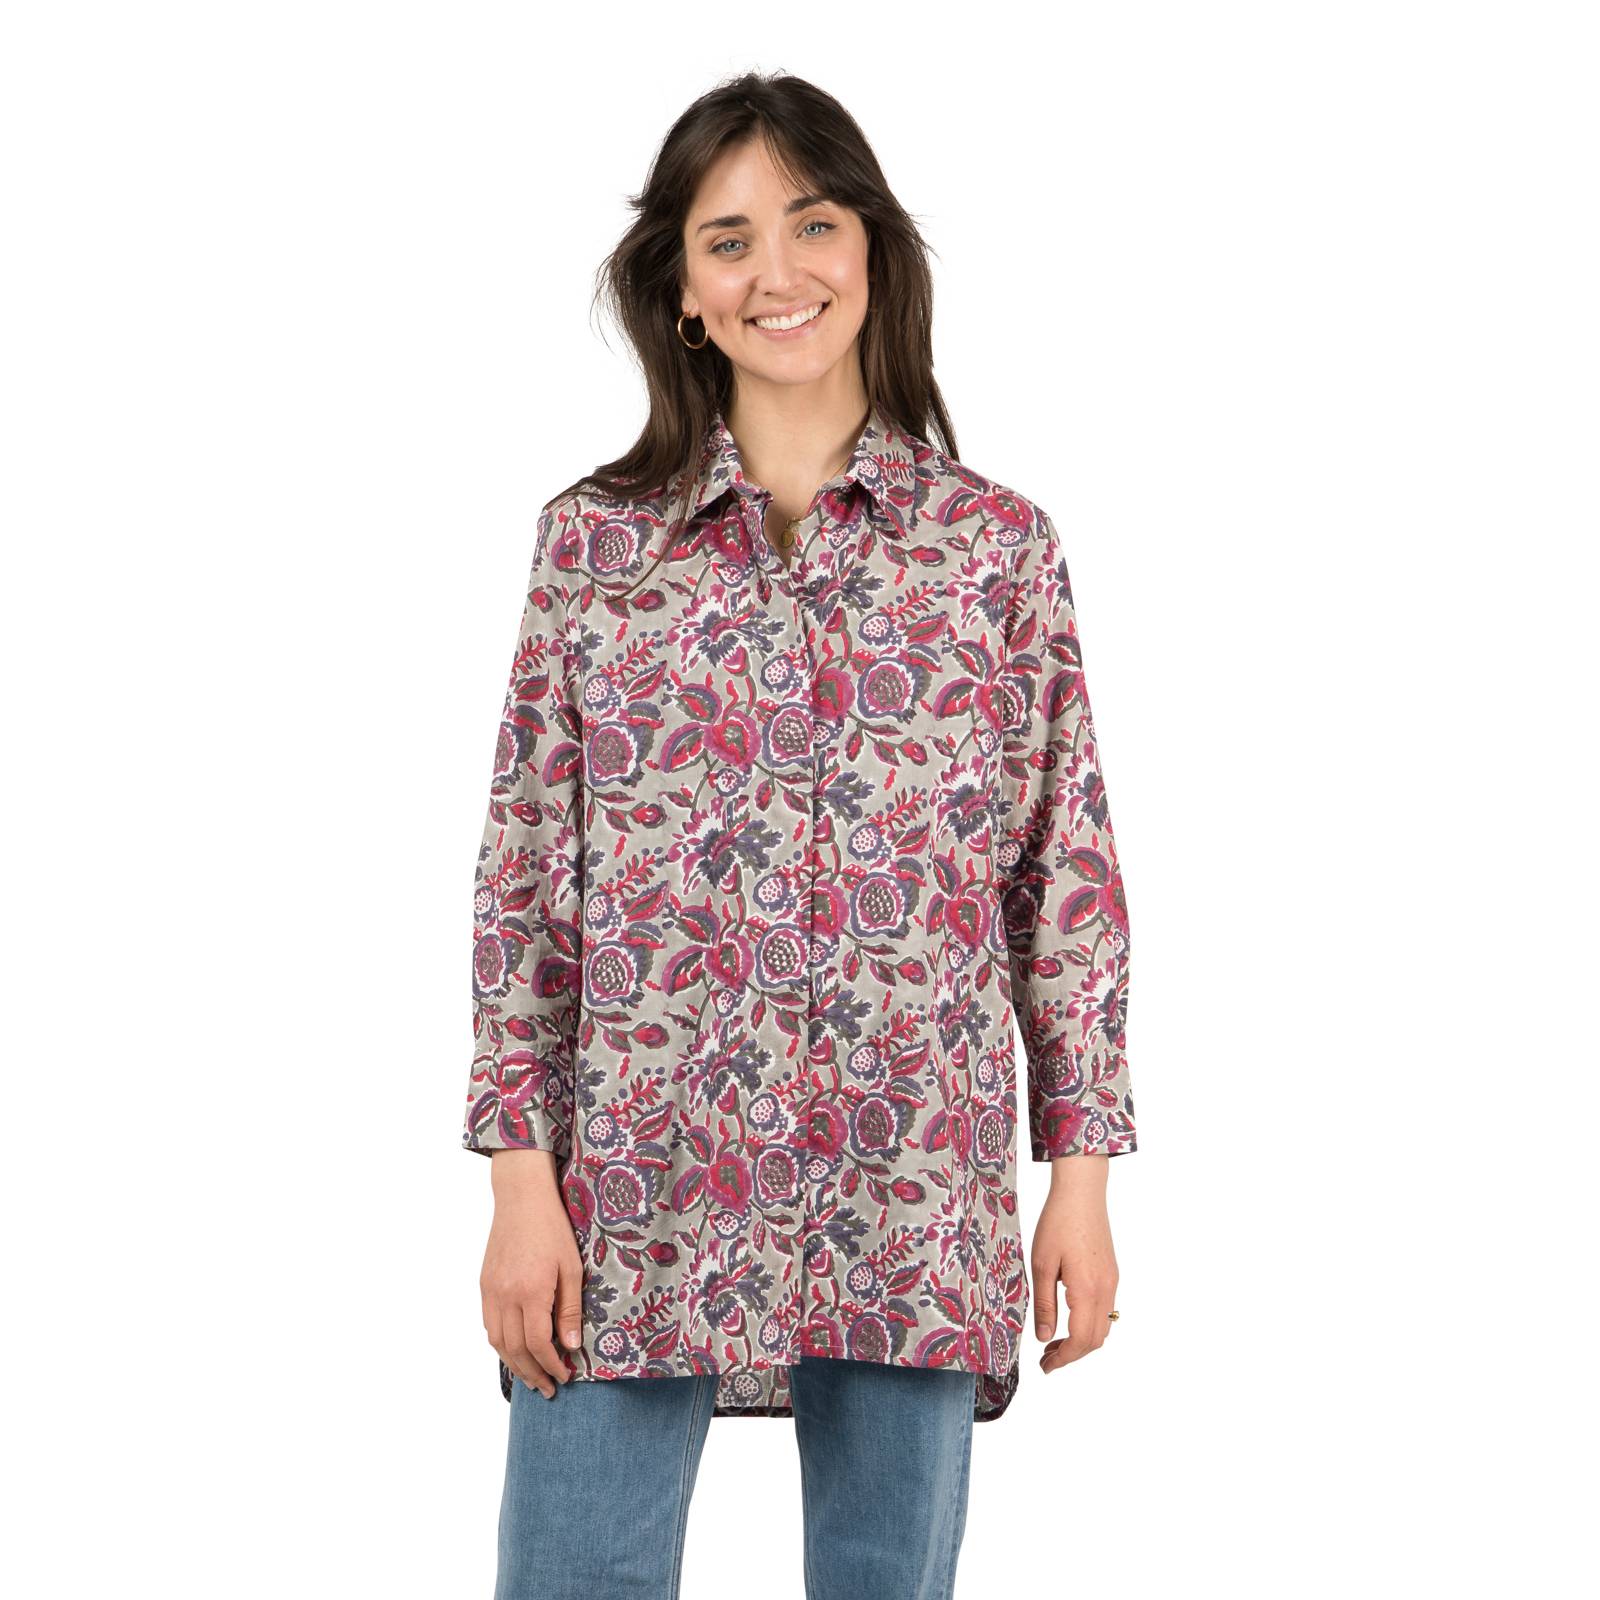 Chemises et blouses Chemise Longue Petunia 100% Coton Bio Ethnique VT1612 PURPLE